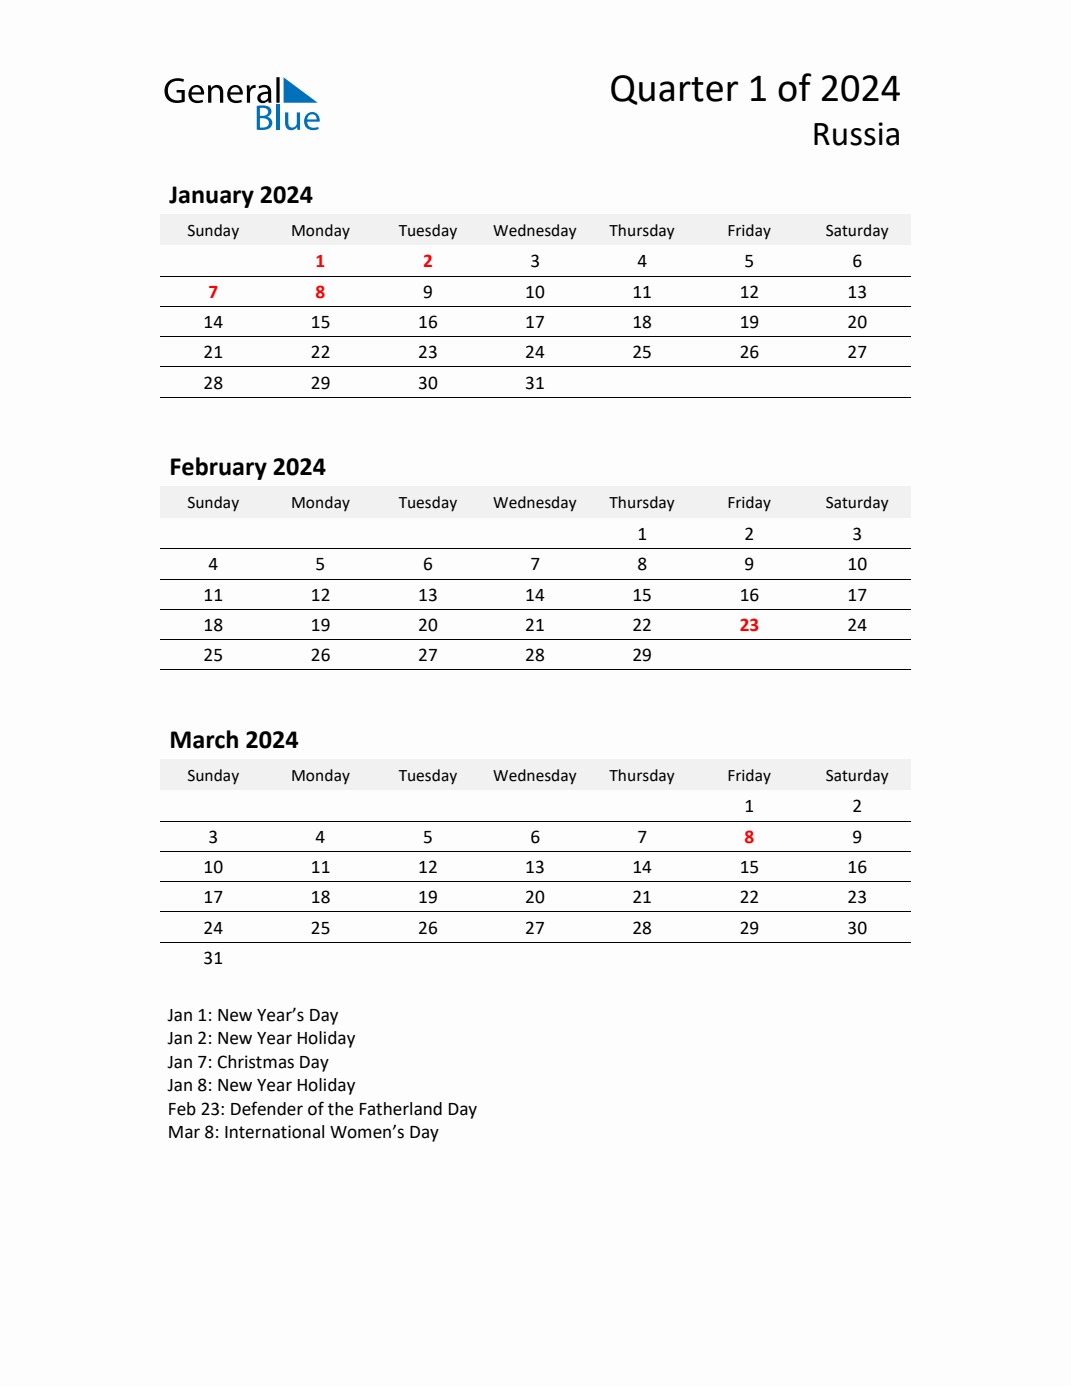 Q1 2024 Quarterly Calendar with Russia Holidays